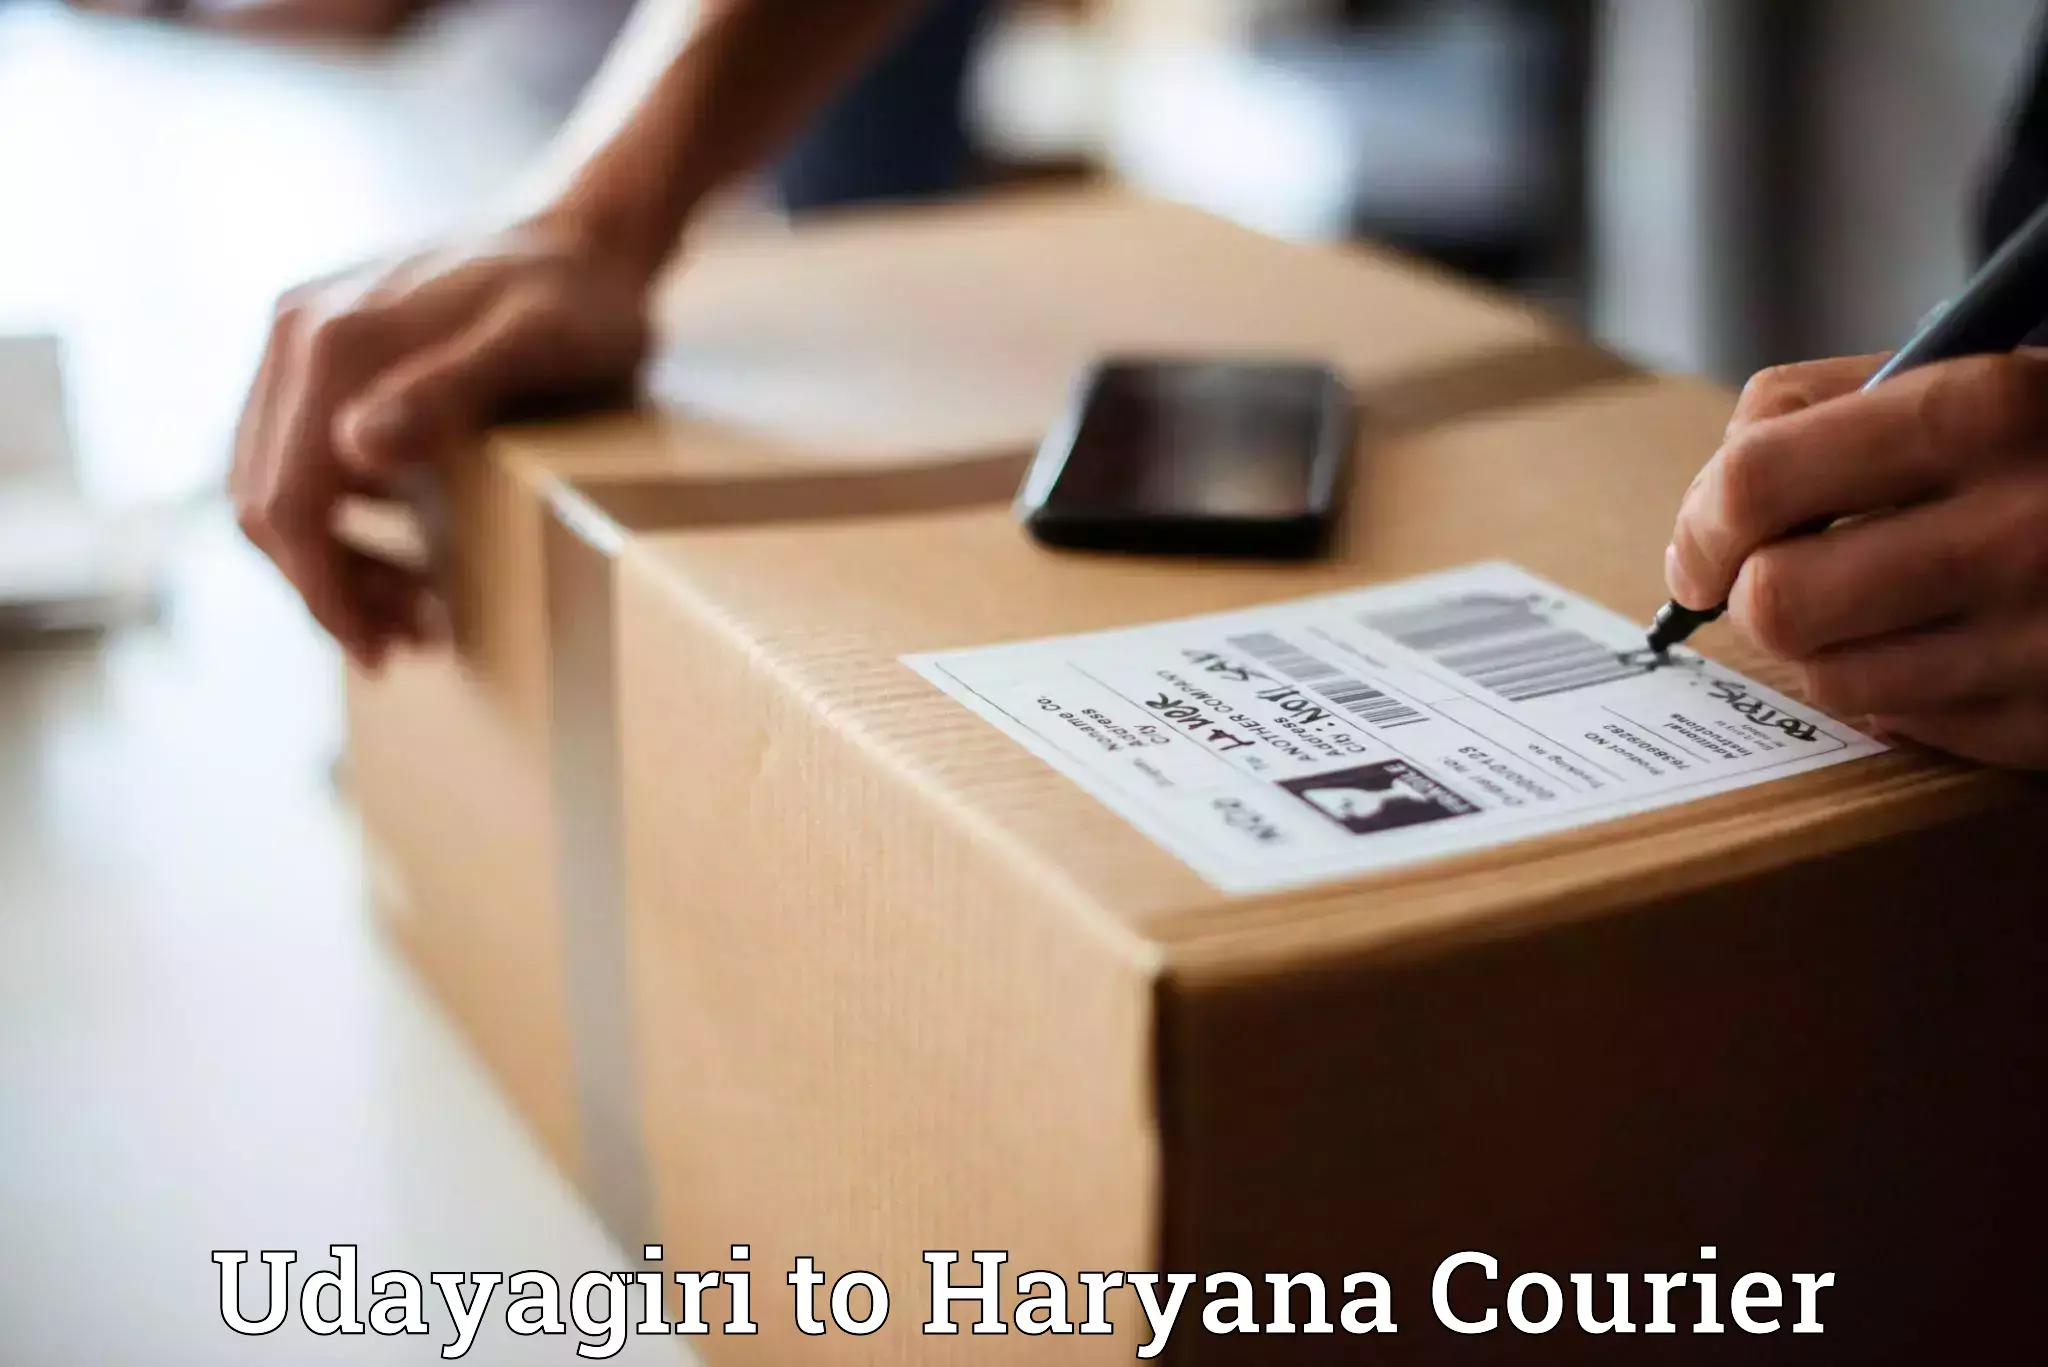 Courier service innovation Udayagiri to Shahabad Markanda